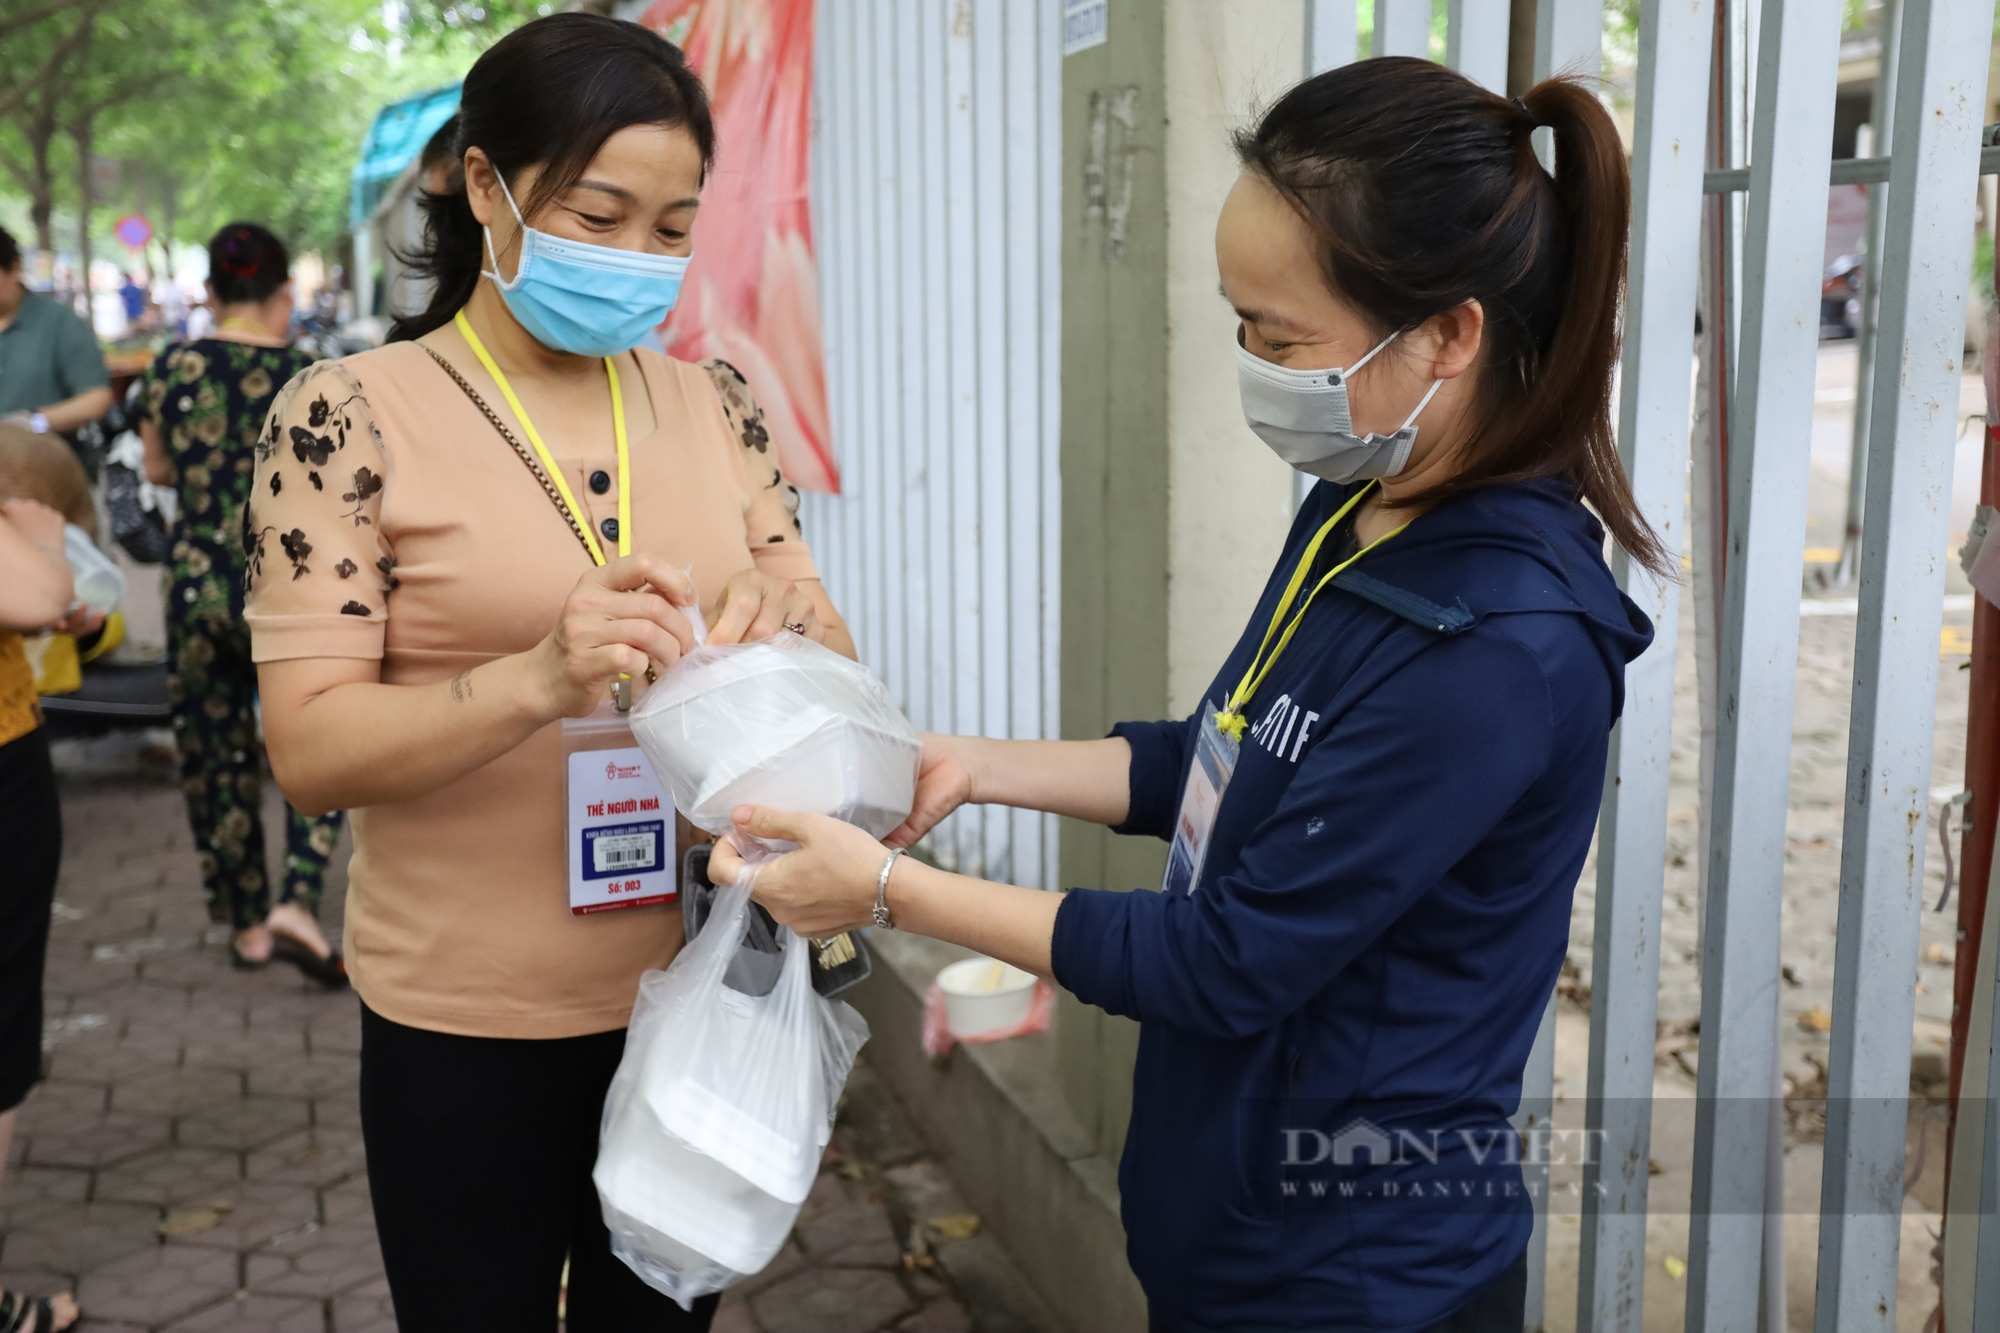 Báo Dân Việt tiếp tục hỗ trợ 1000 bệnh nhân nghèo bữa sáng miễn phí  - Ảnh 11.